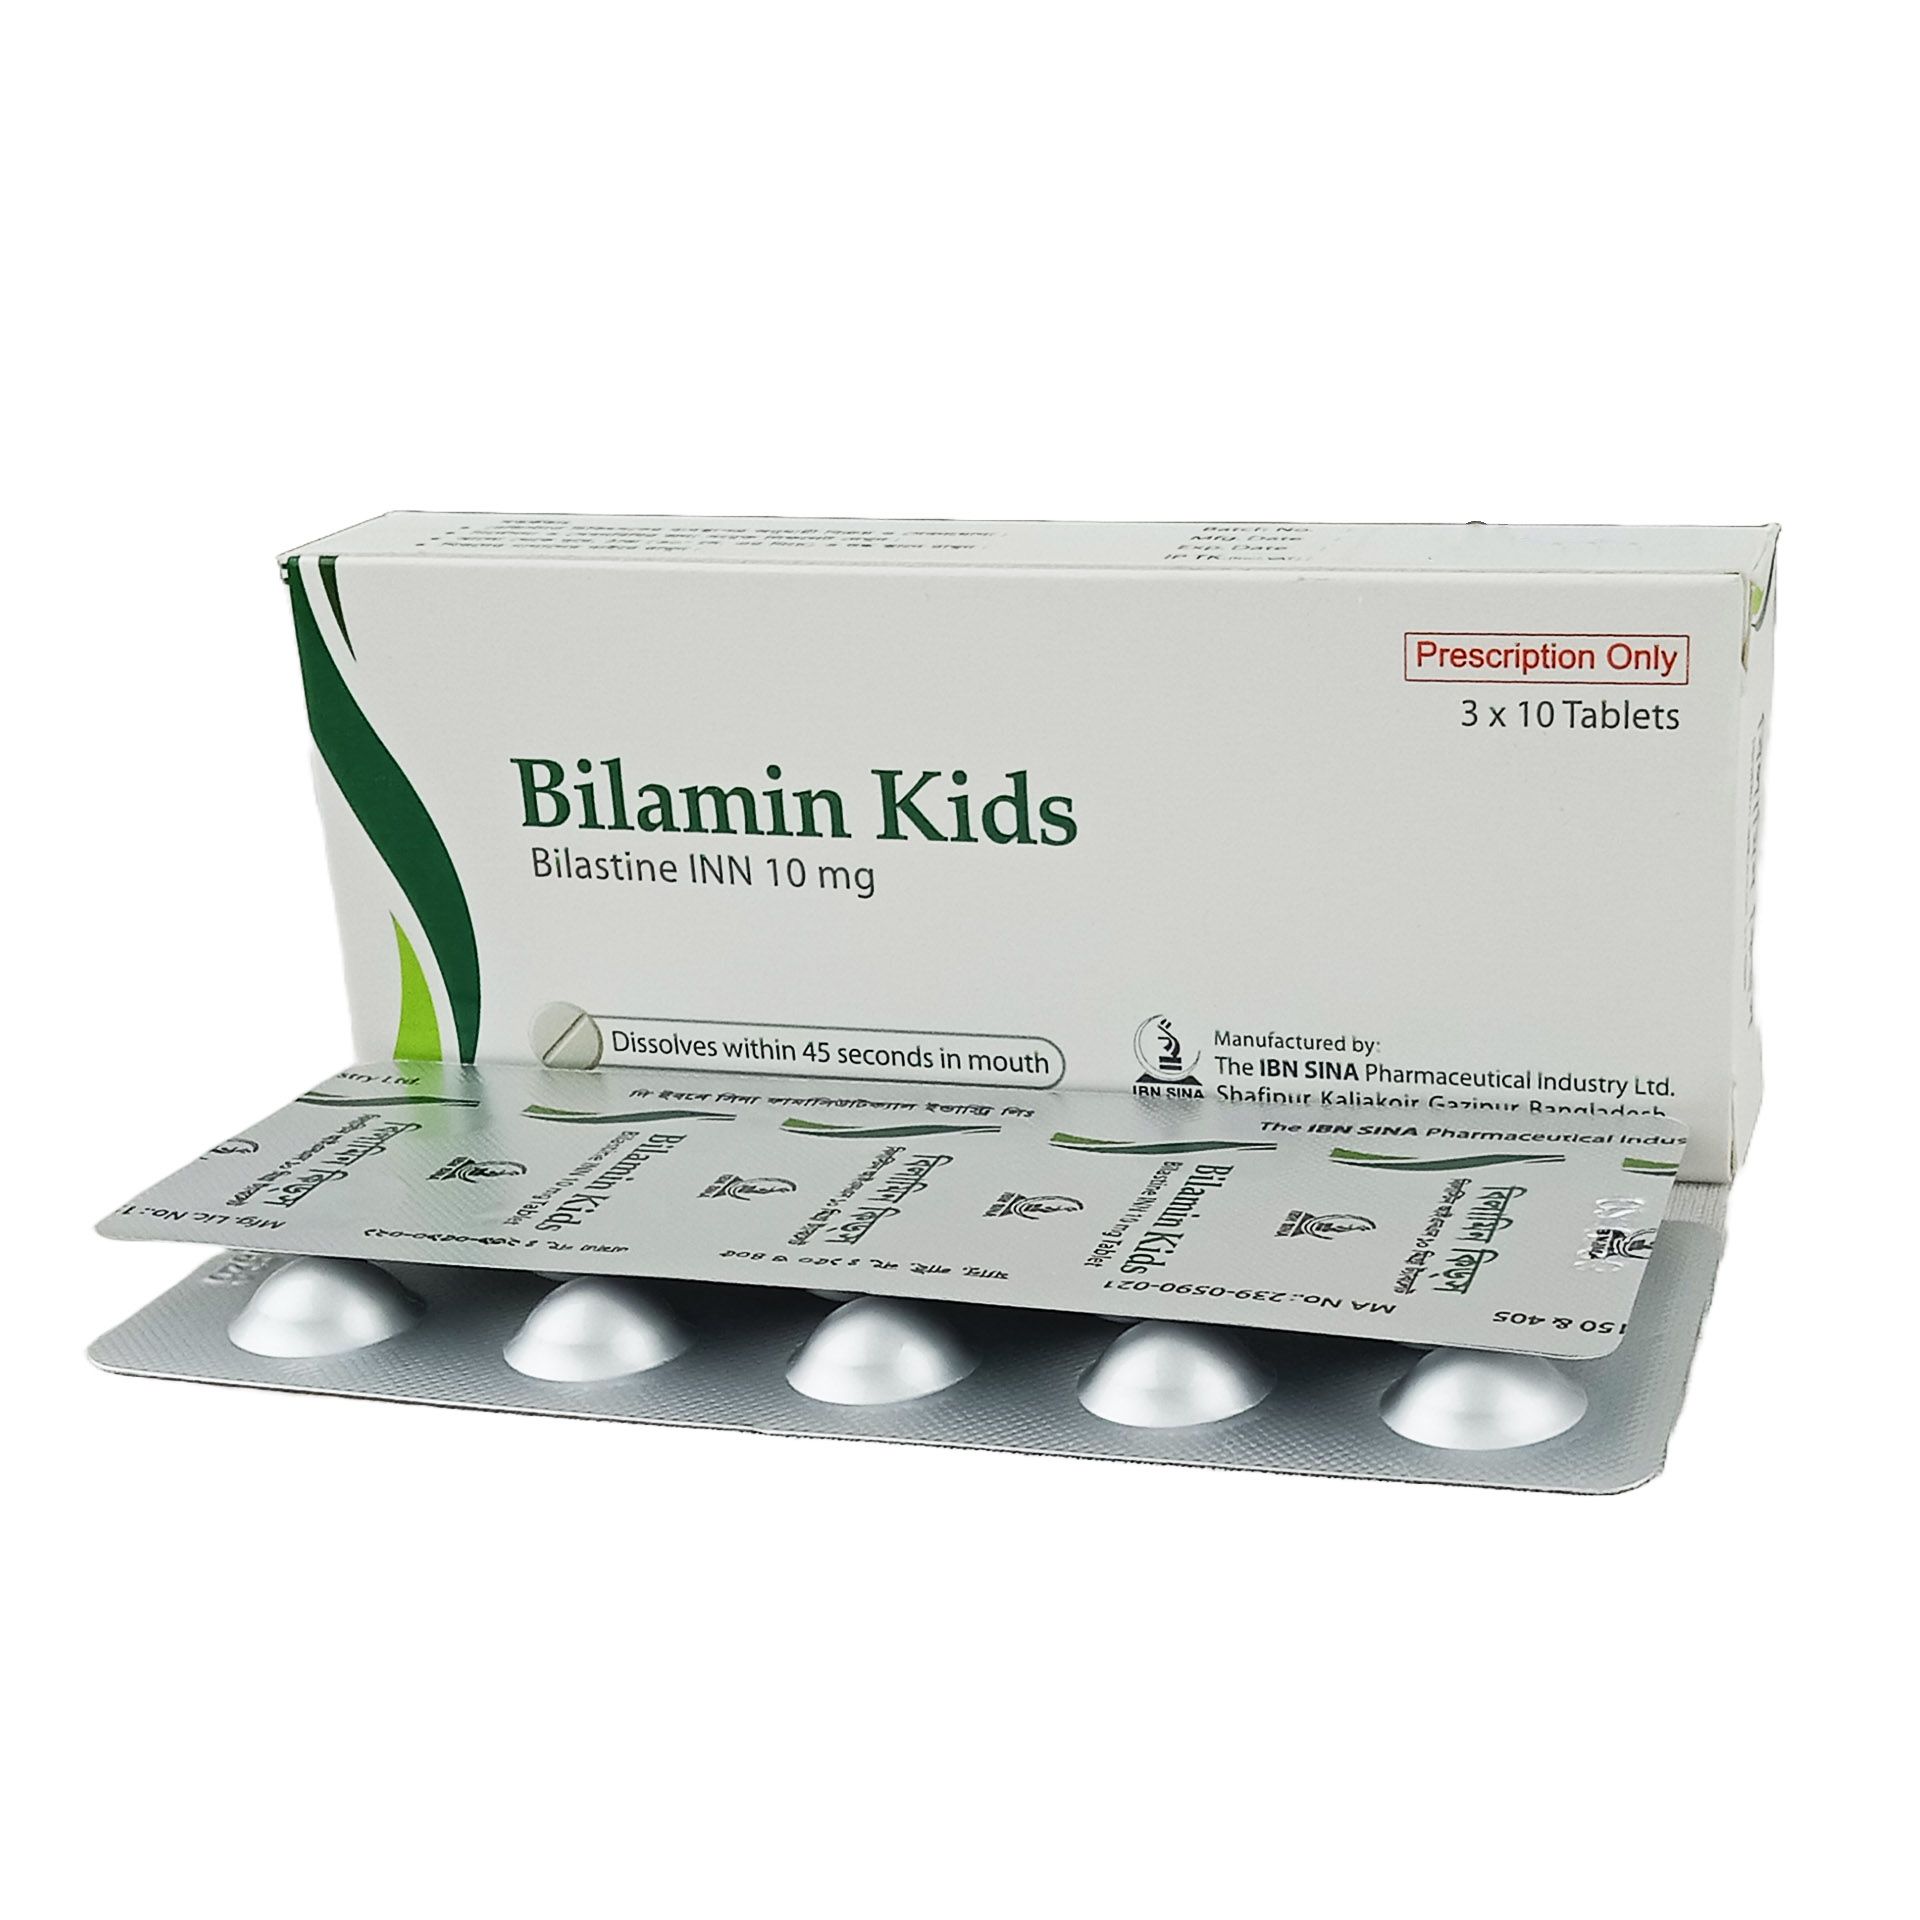 Bilamin Kids 10mg tablet